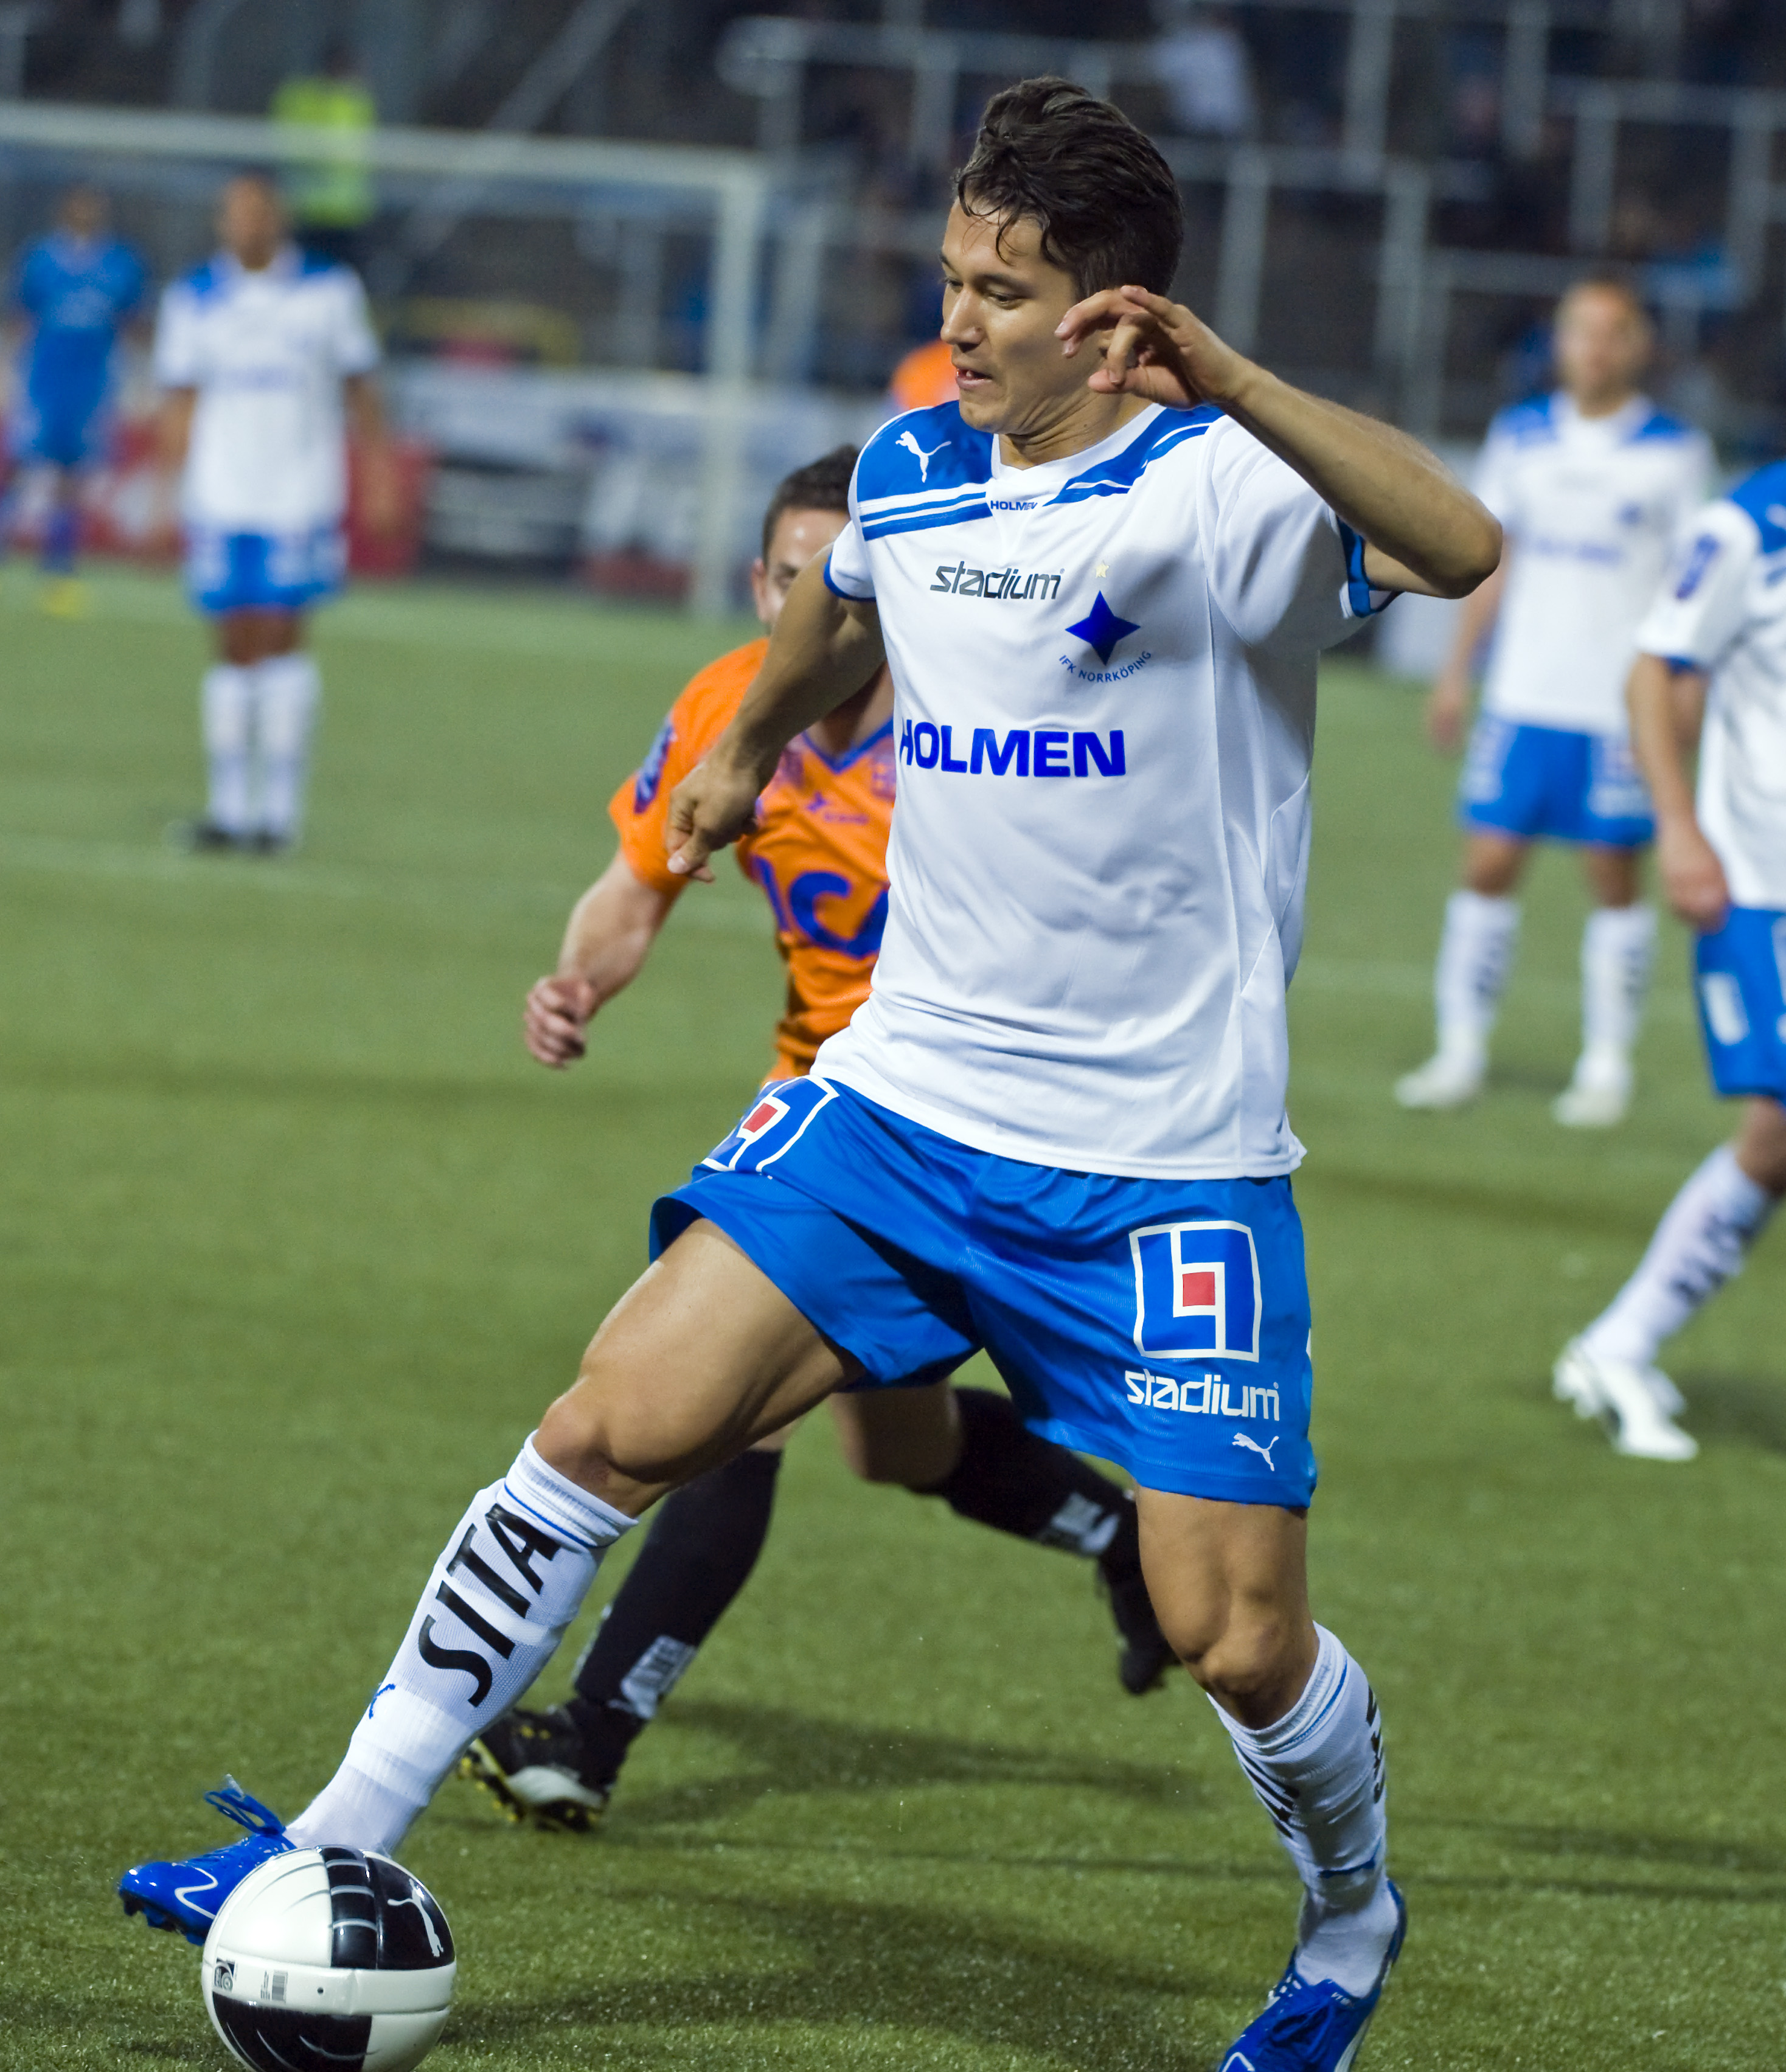 David Wiklander, IFK Norrköping: "Elfsborg."